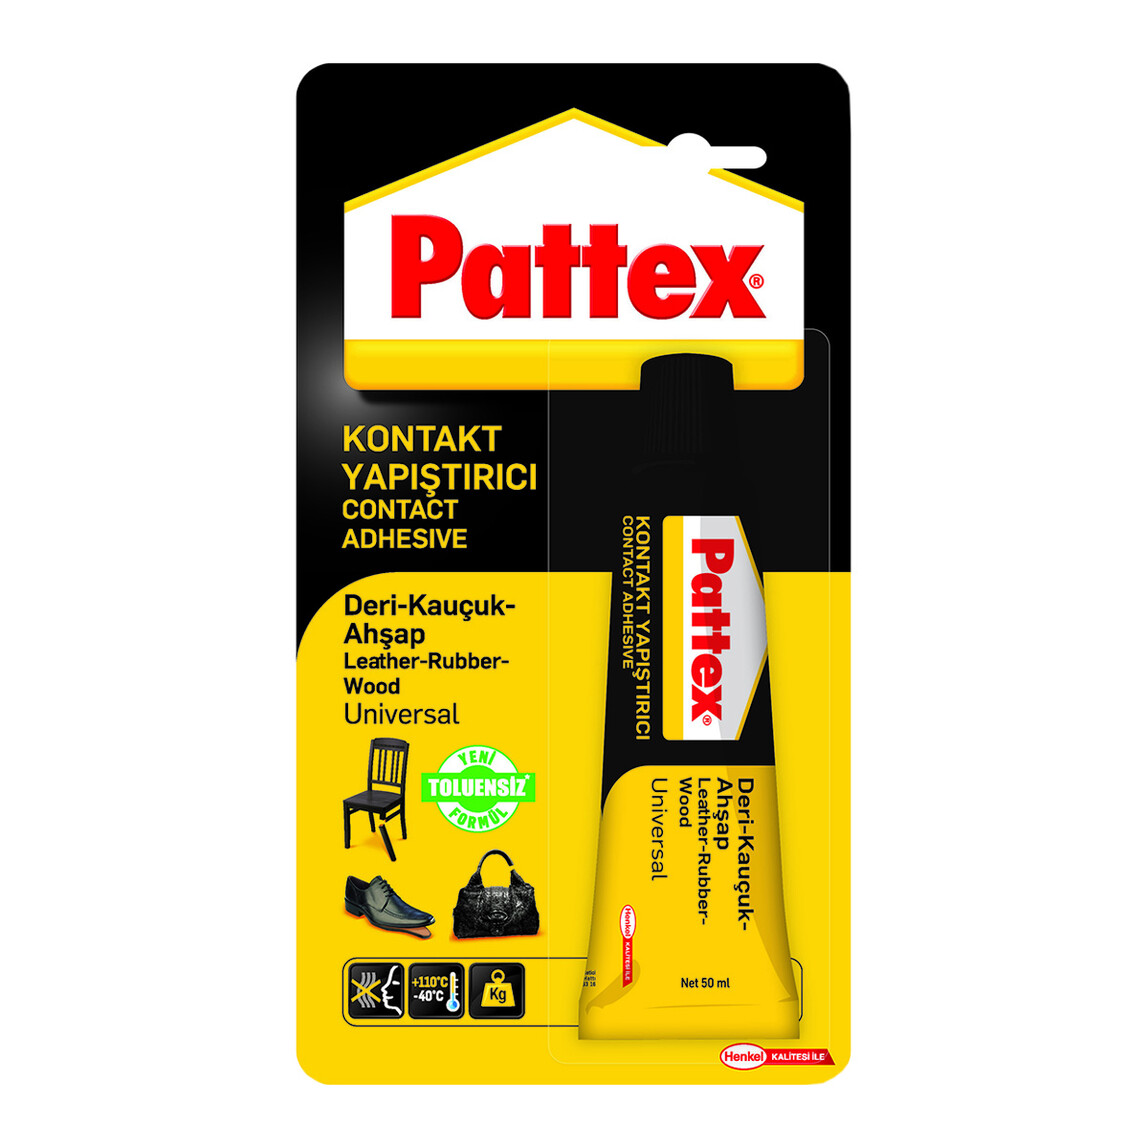    Pattex Universal Kontakt Yapıştırıcı 50 Gr  